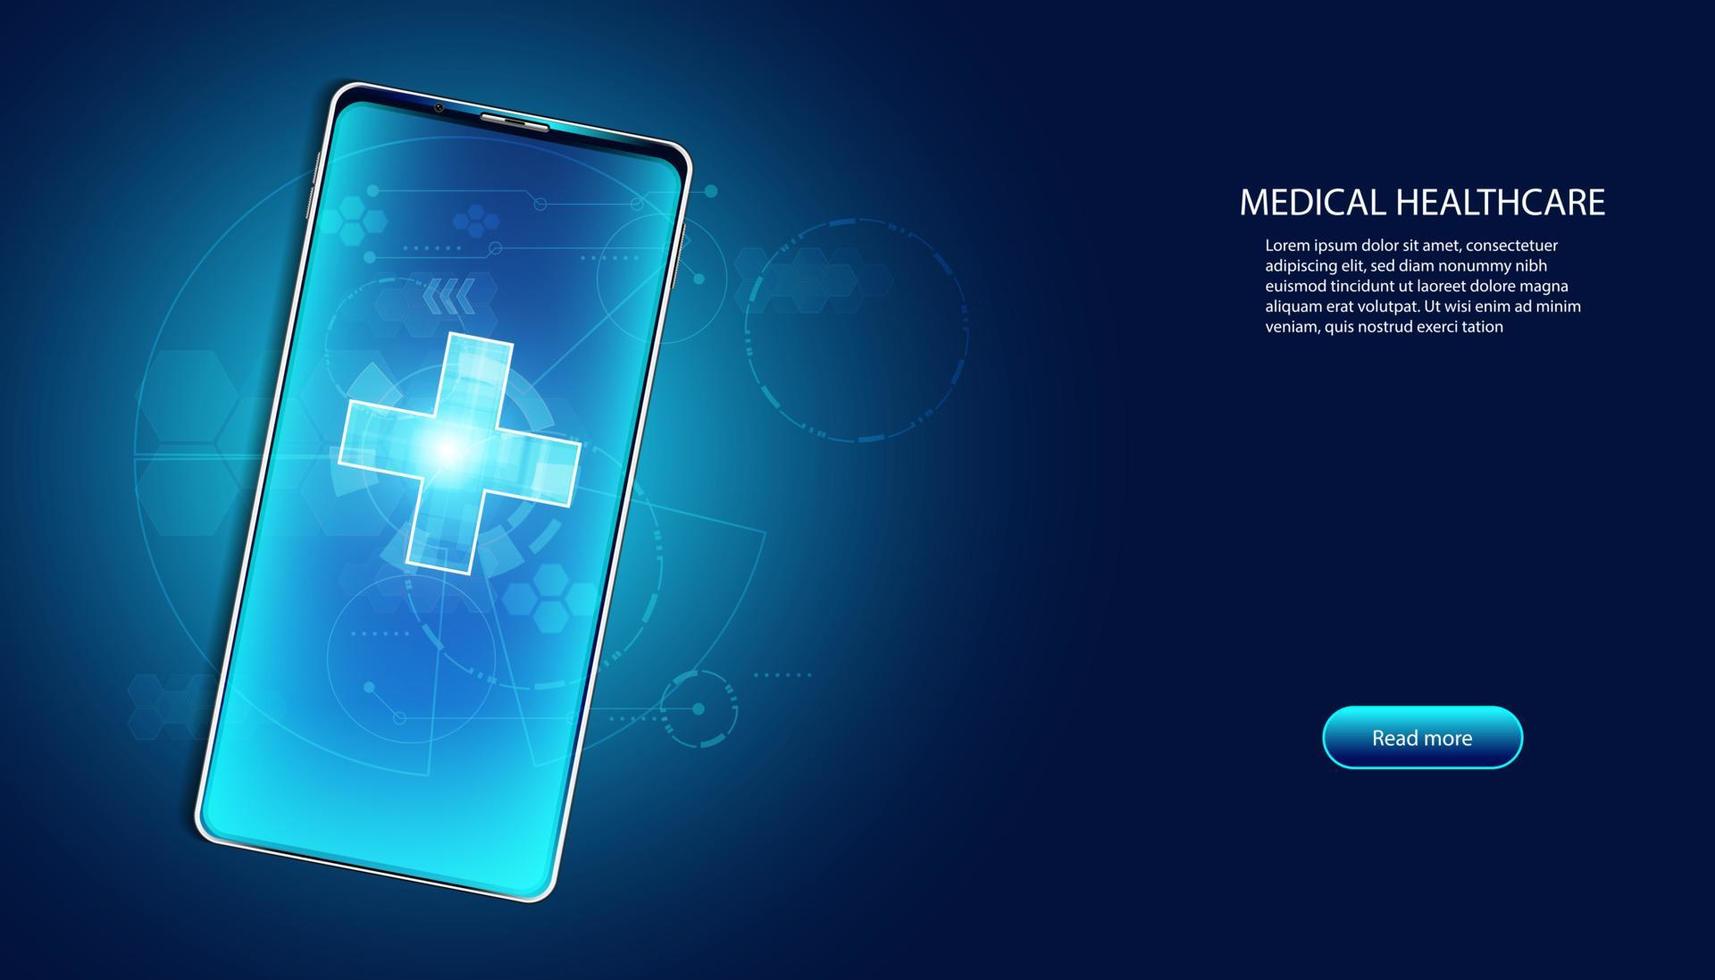 abstrakte Gesundheit medizinische Wissenschaft Gesundheitswesen digitale Technologie Wissenschaft auf dem Smartphone Gesundheit plus Konzept moderne Innovation, Behandlung, Medizin auf blauem High-Tech-Zukunftshintergrund. vektor